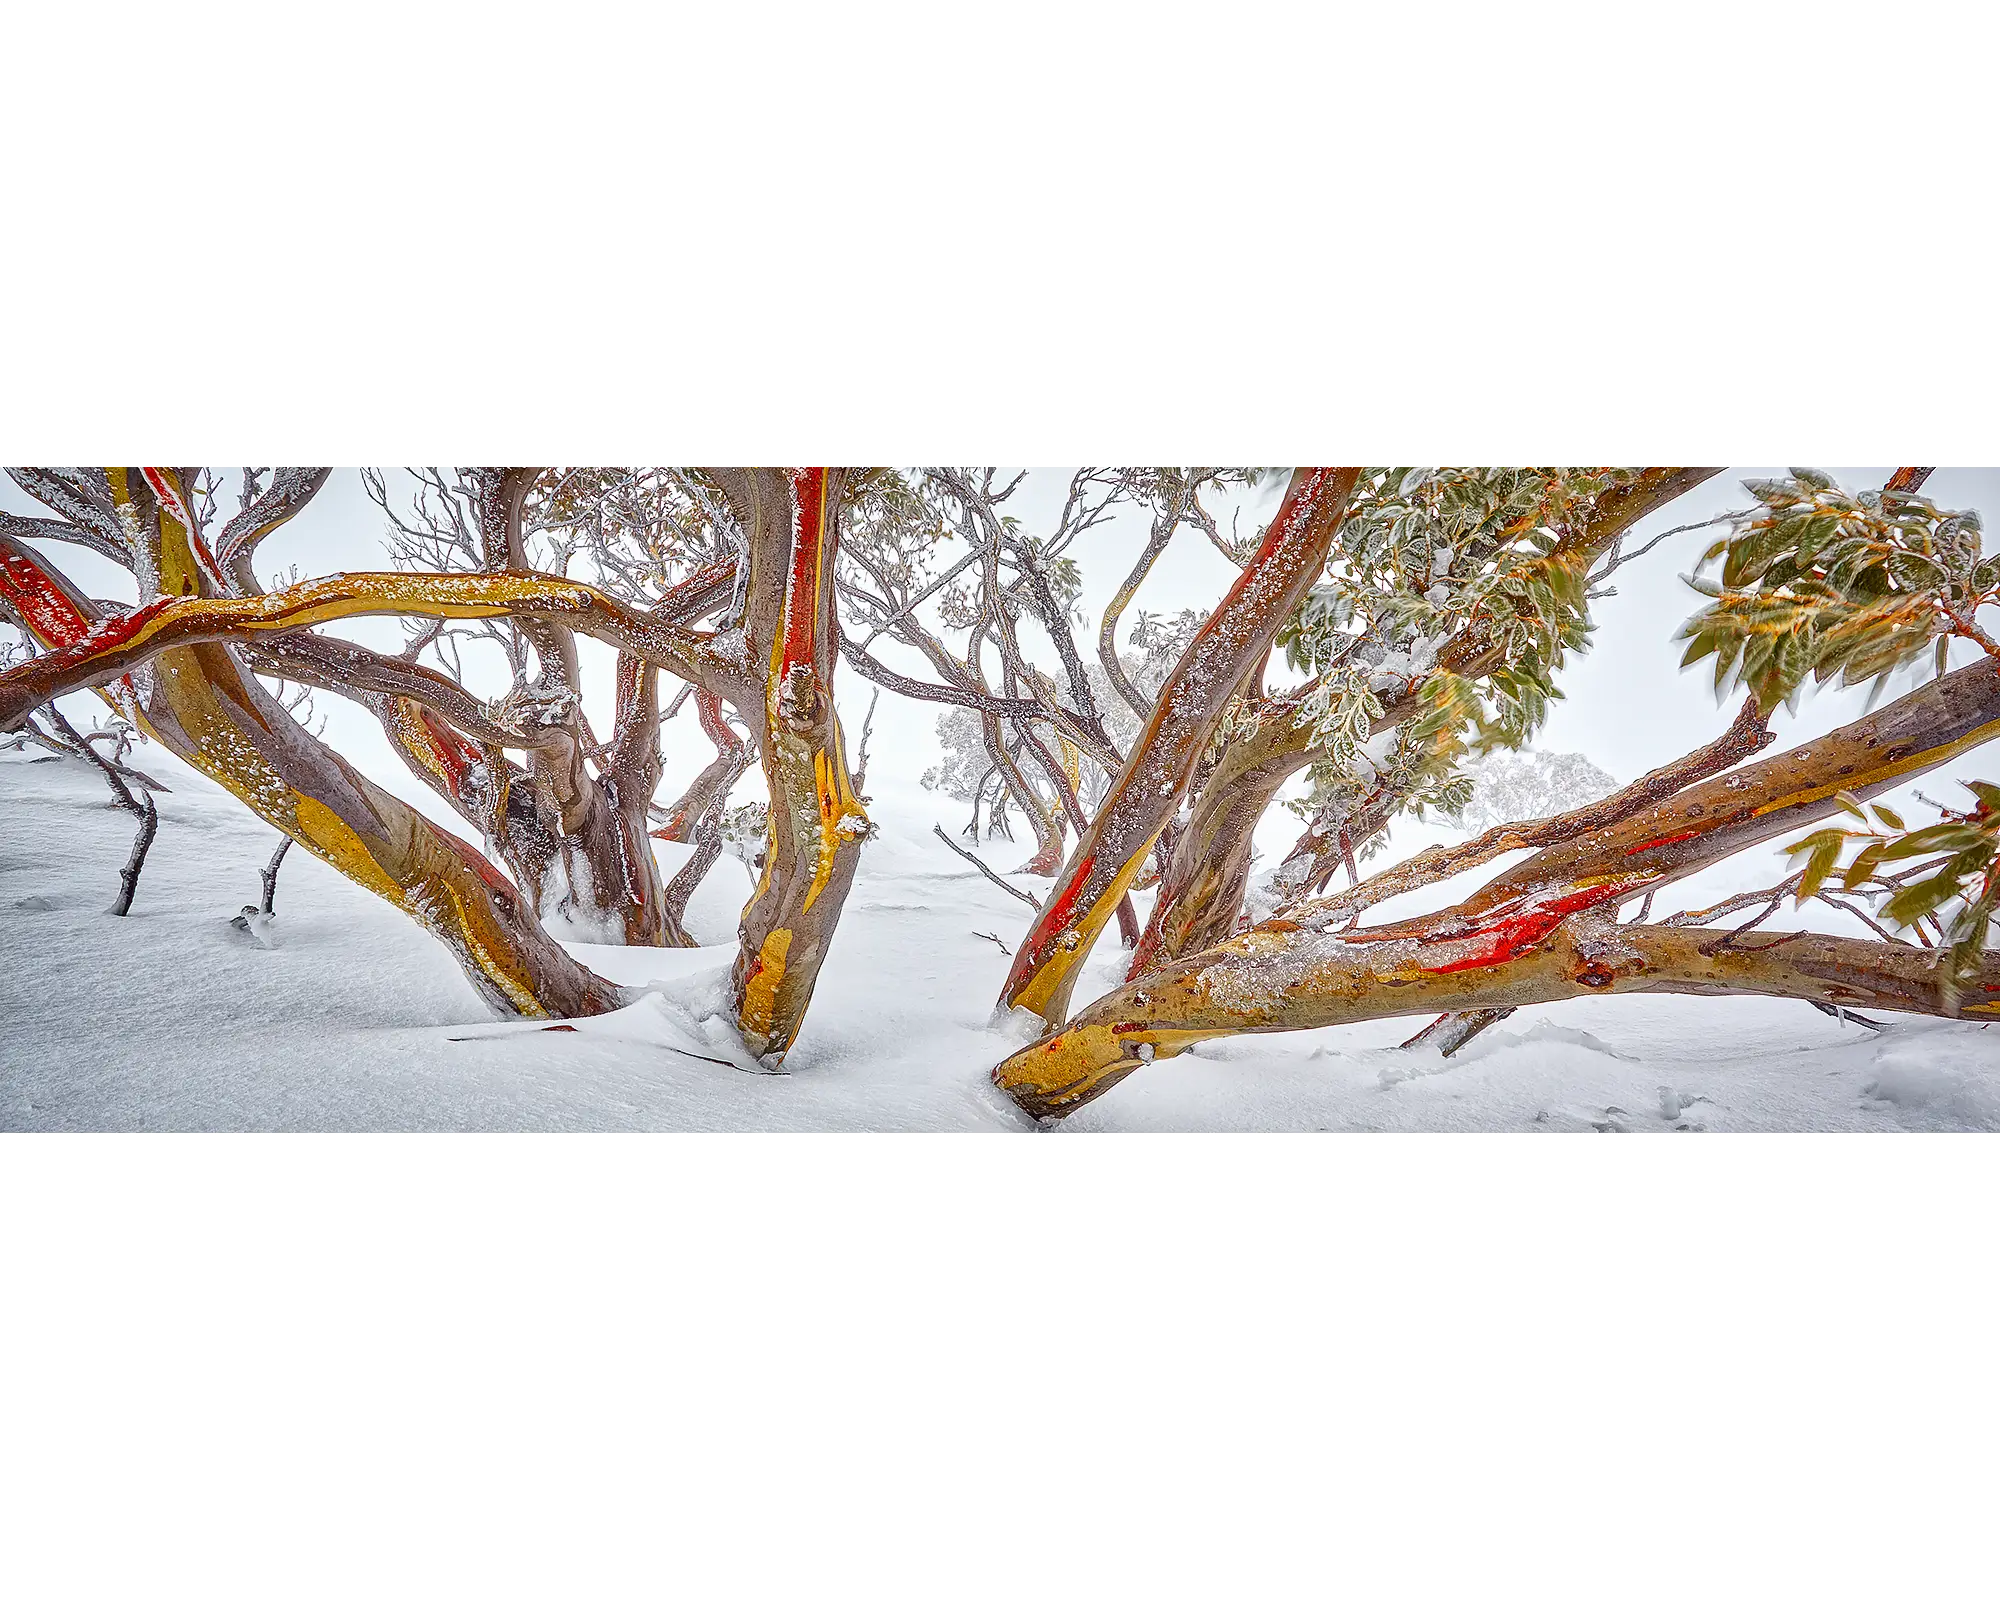 Wild. Snow gum in snow, Mount Hotham, Victoria, Australia.